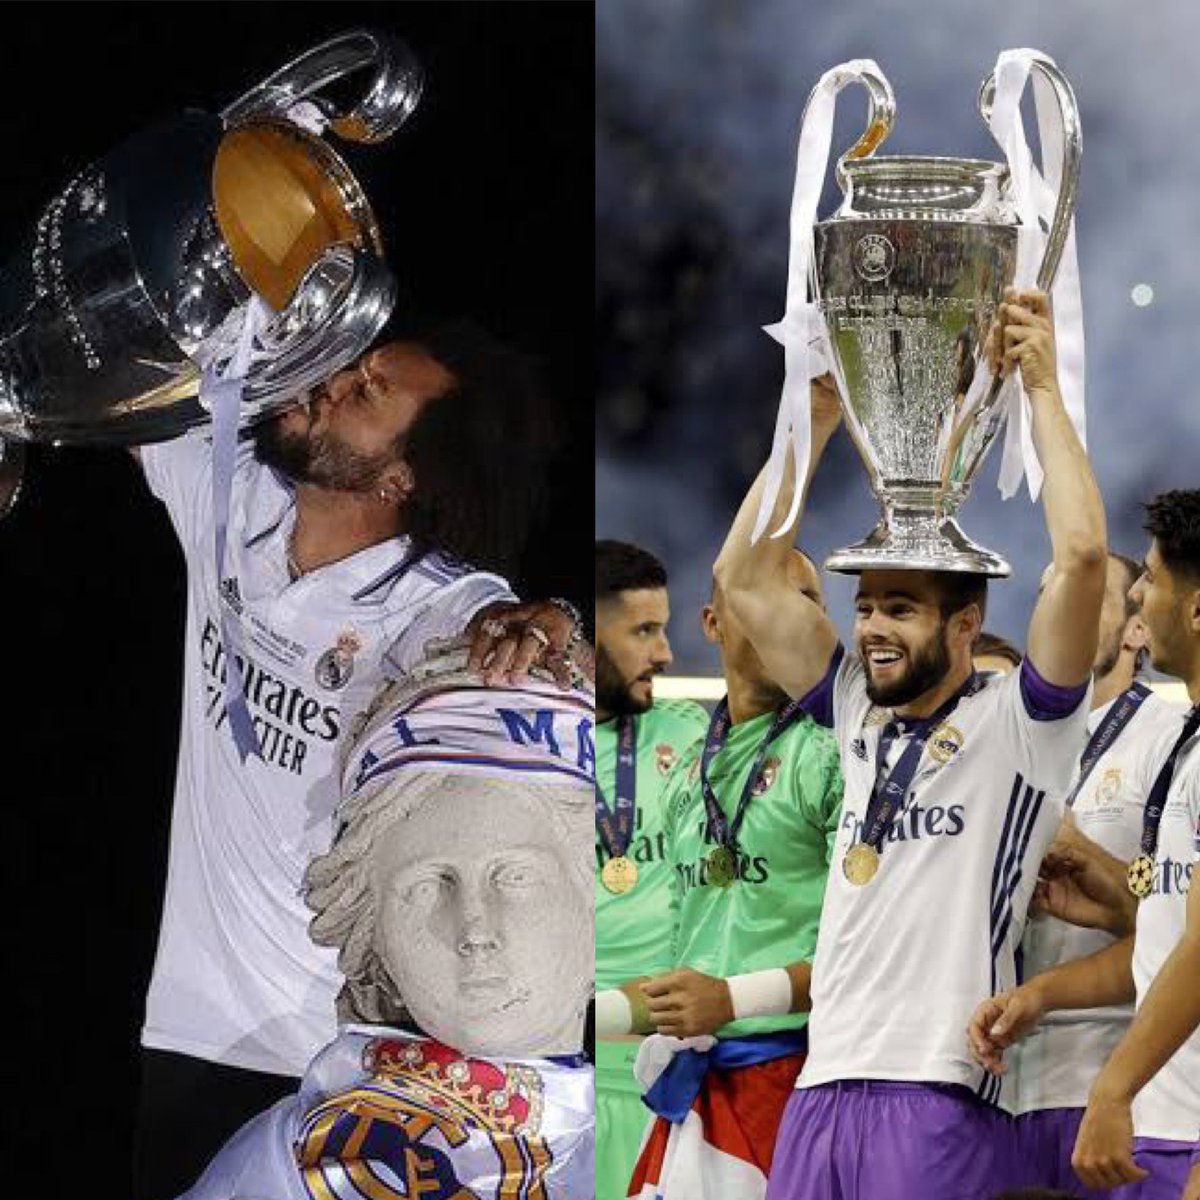 Nacho Fernandez suma 24 títulos como futbolista del Real Madrid. Si gana la Champions League y/o La Liga, podría empatar o hasta superar a Marcelo (25) como el futbolista con más trofeos en la historia del club. Sería la despedida perfecta.